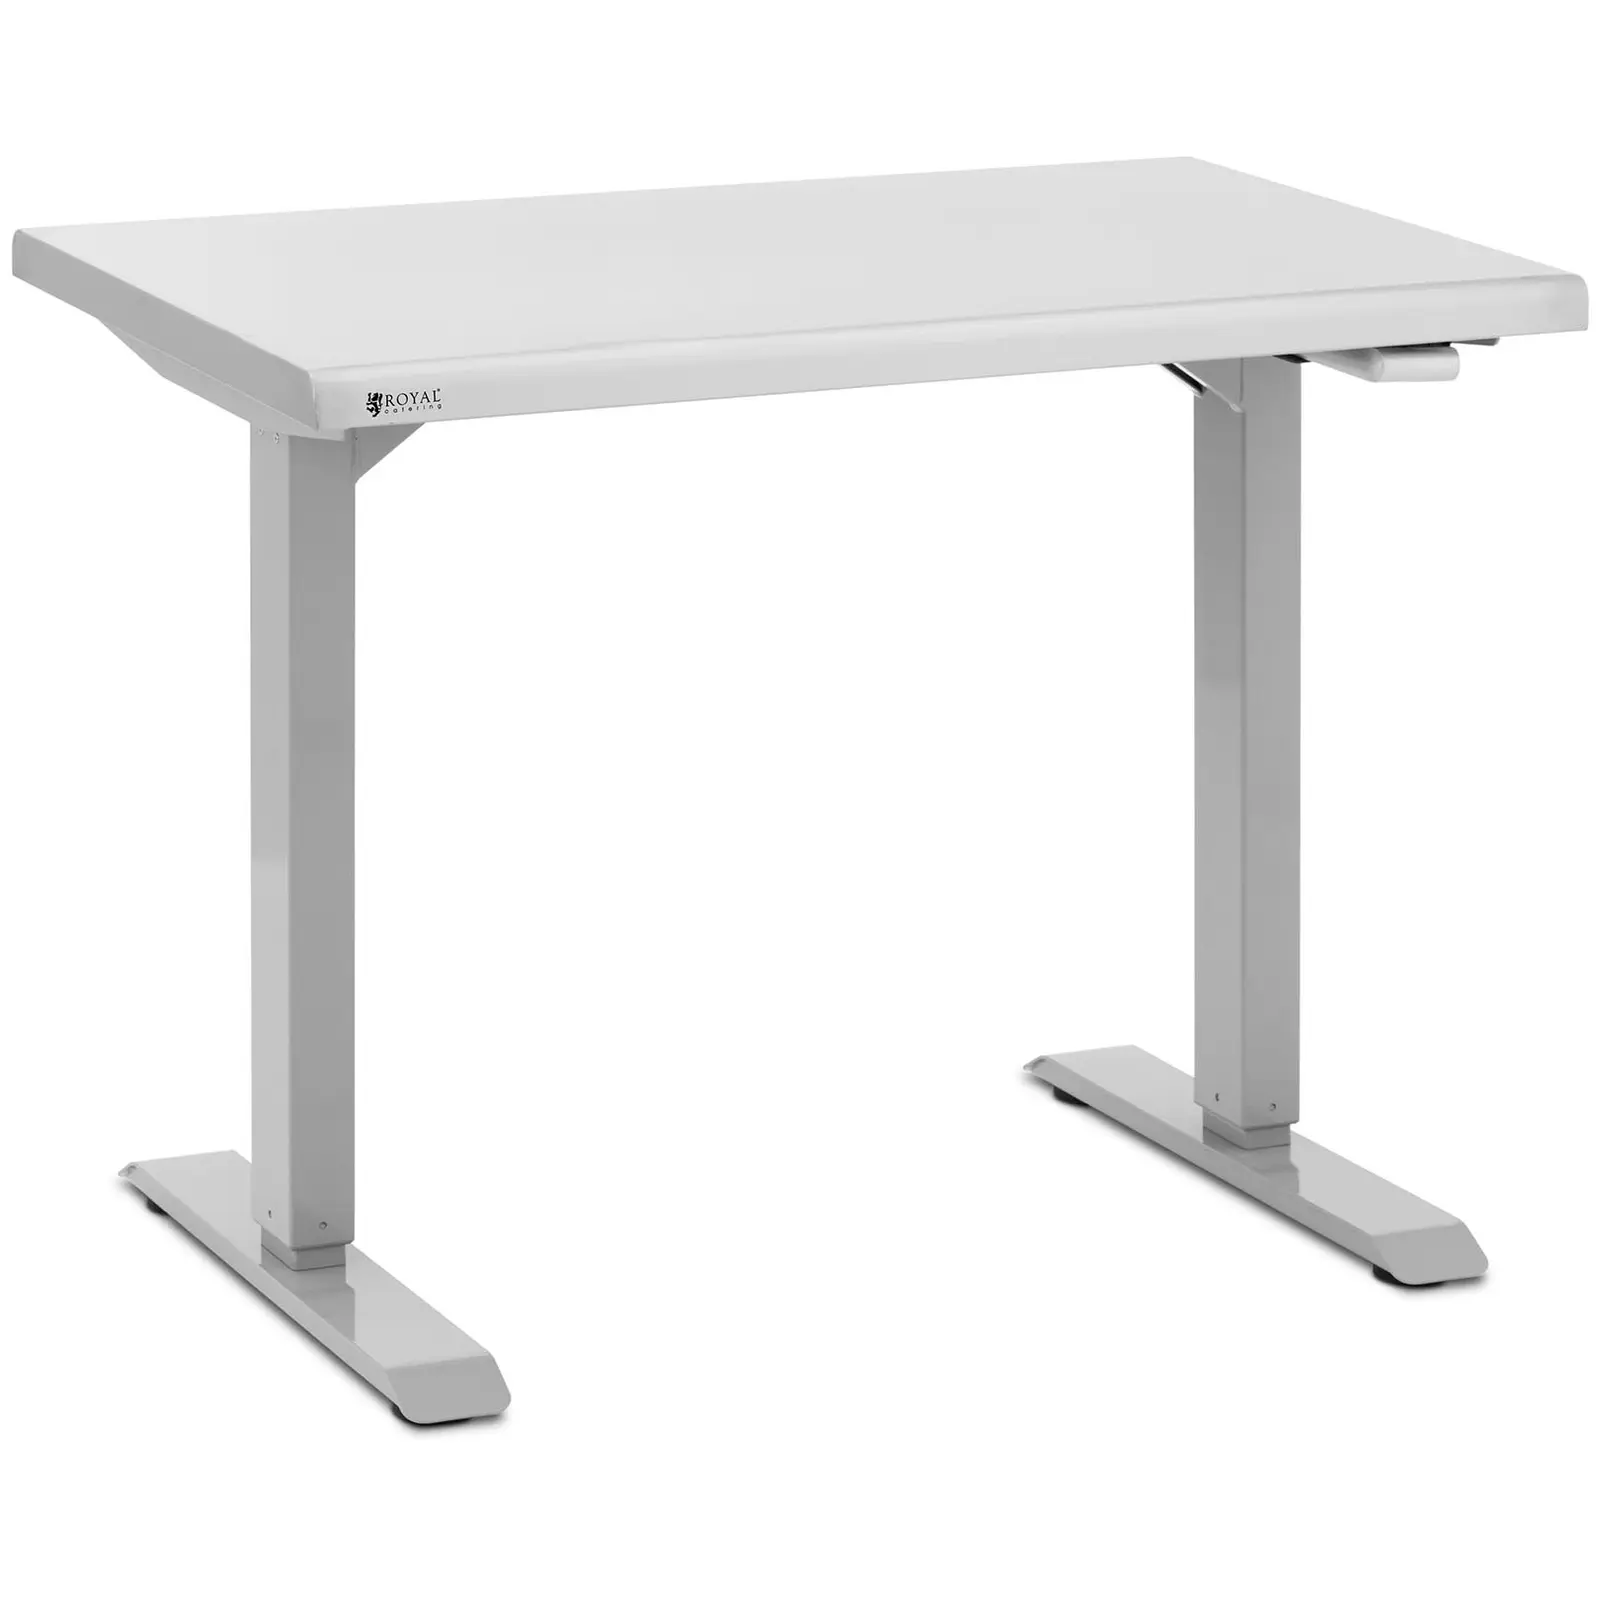 Nerūdijančio plieno stalas – reguliuojamo aukščio – 96 x 60 x 71,5 - 117 cm – 70 kg – Royal Catering